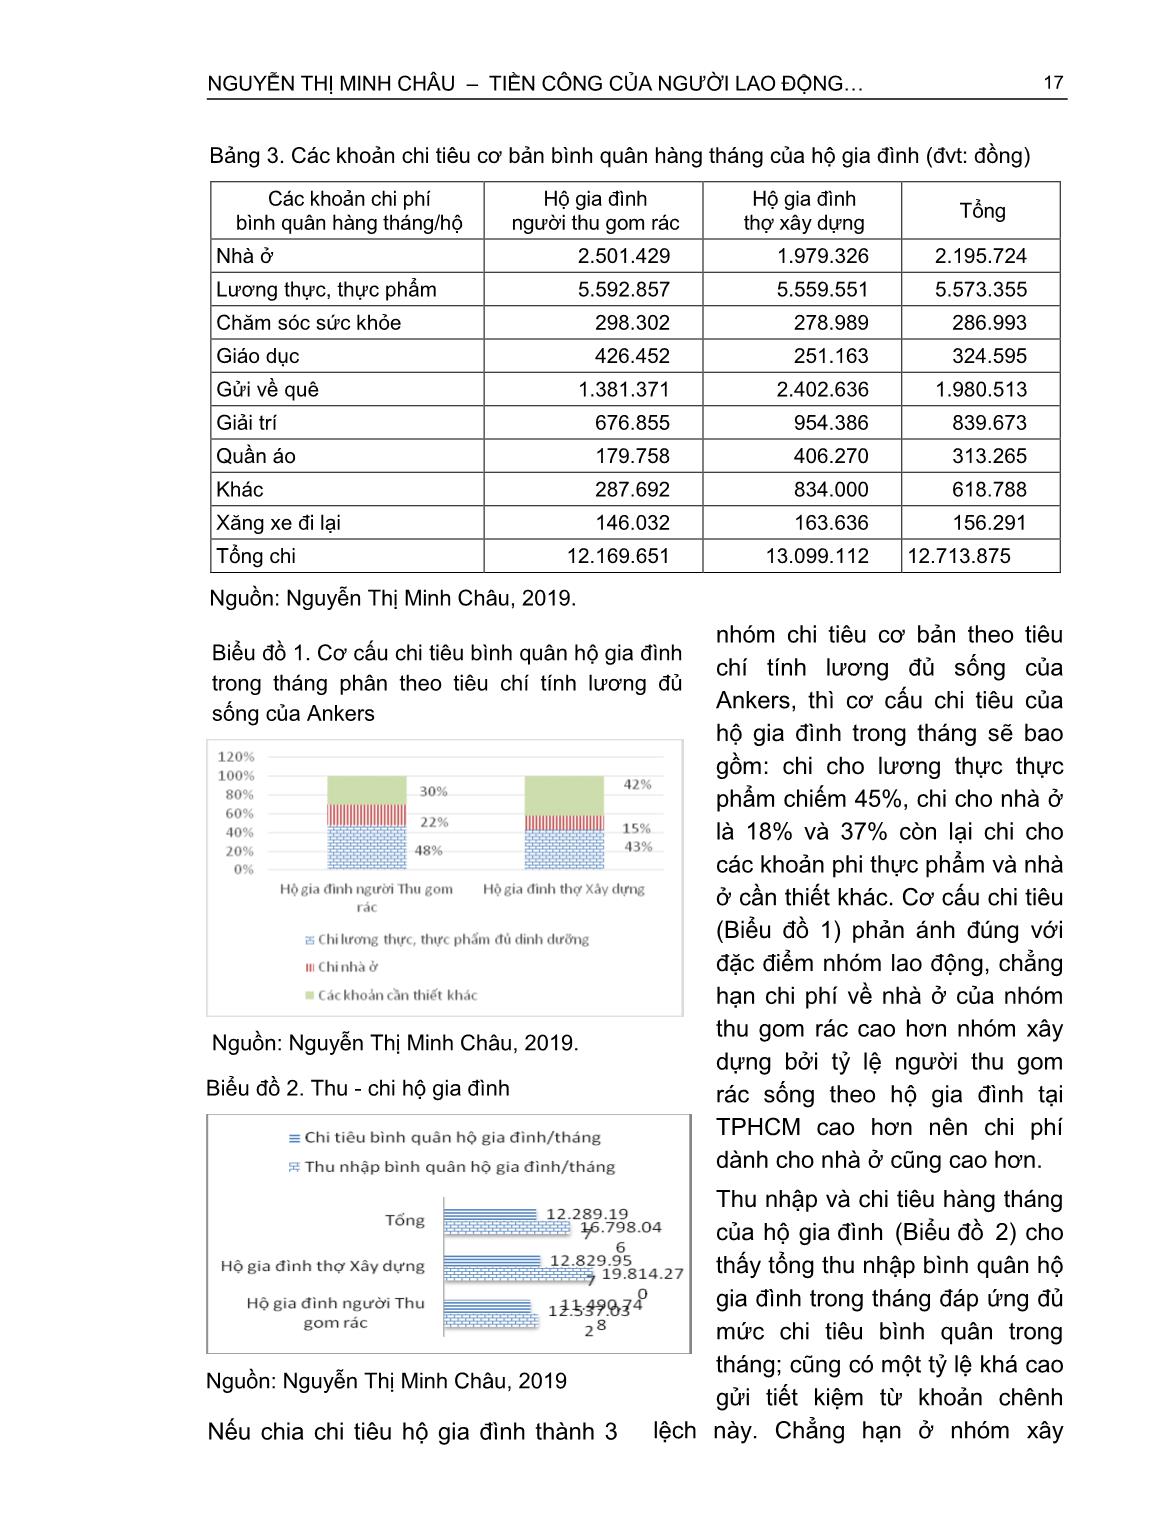 Tiền công của người lao động làm thuê phi chính thức - So sánh với tiền lương tối thiểu vùng và lương đủ sống (Trường hợp người thu gom rác và thợ xây dựng tại thành phố Hồ Chí Minh) trang 6